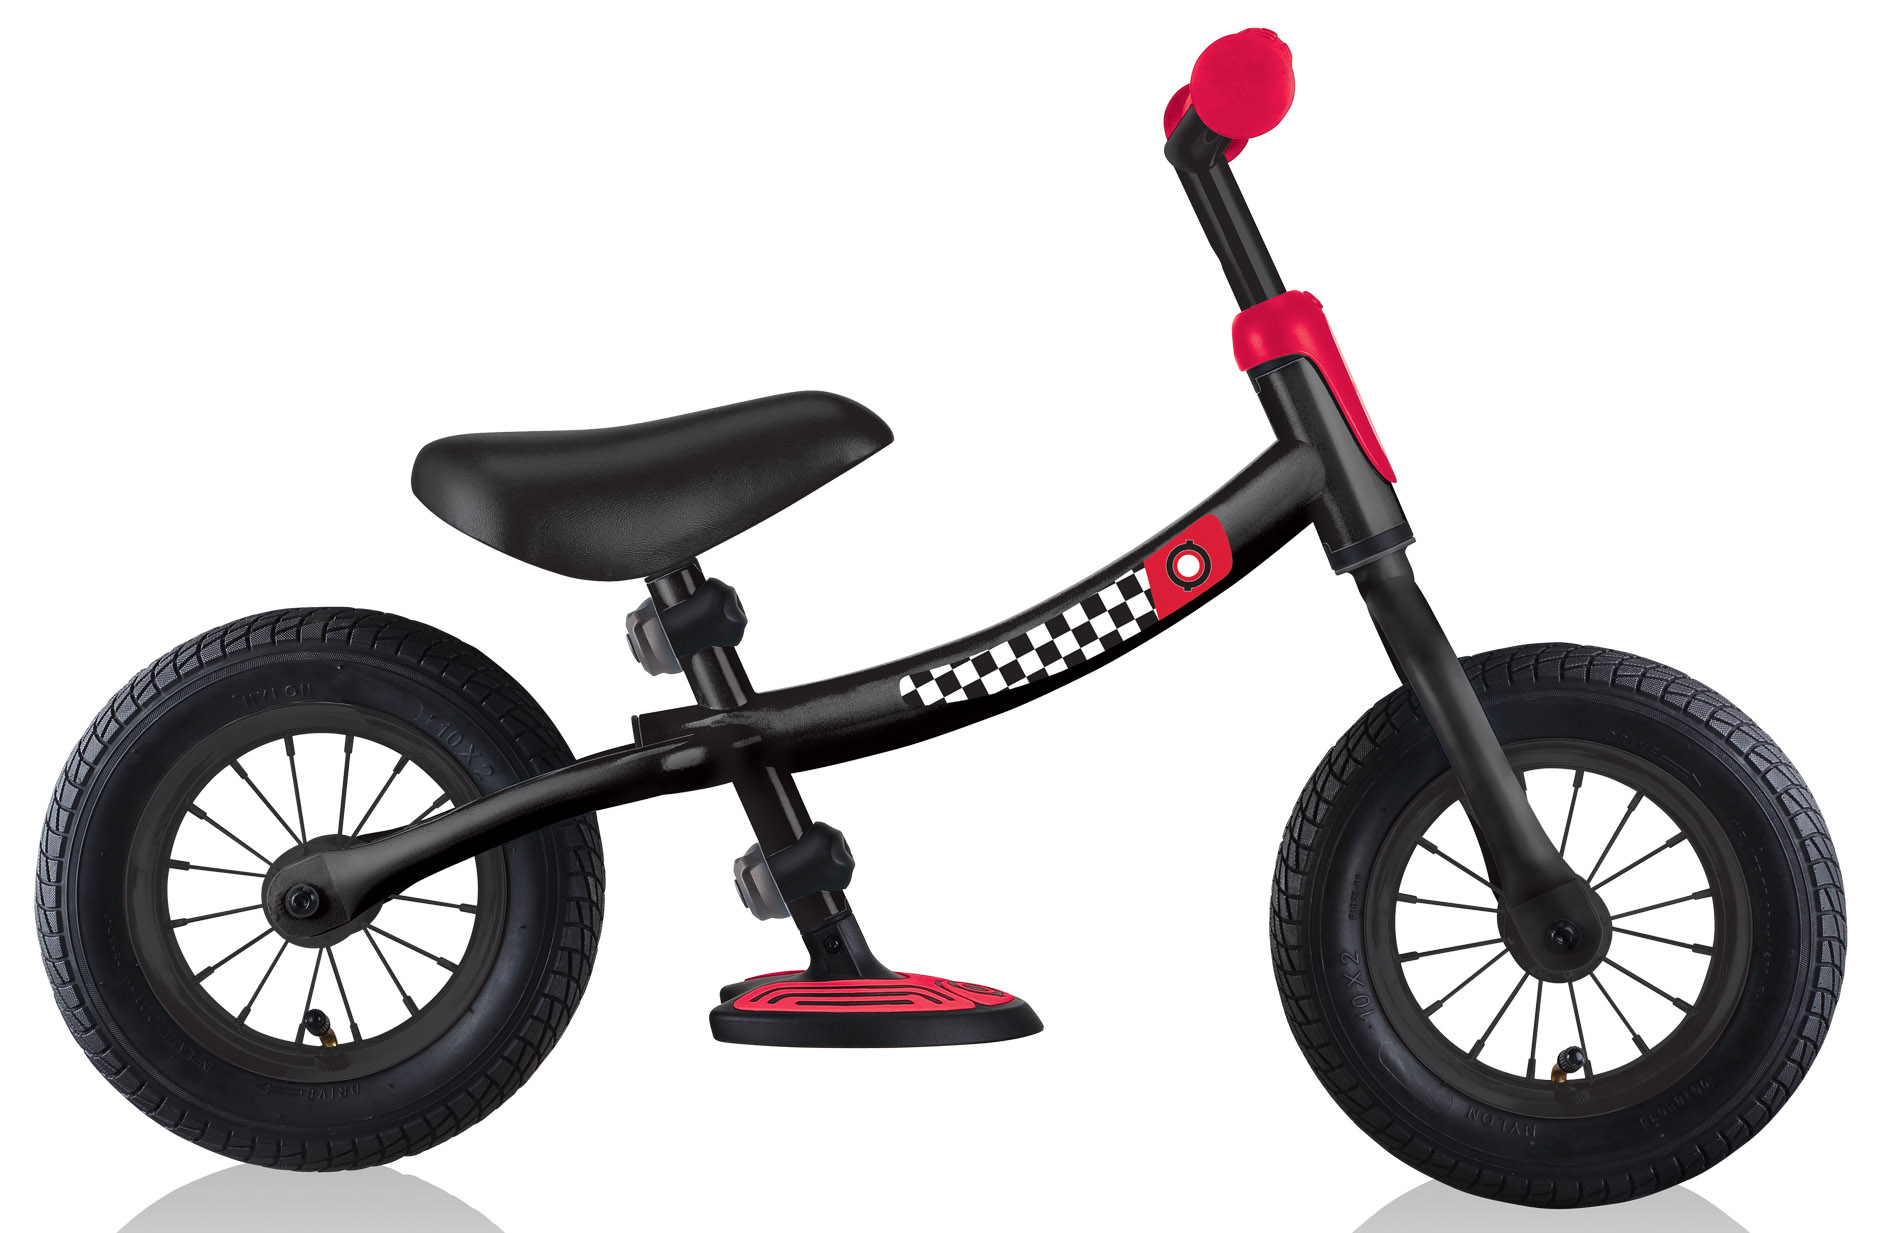  Отзывы о Детском велосипеде Globber Go Bike Air (2021) 2021